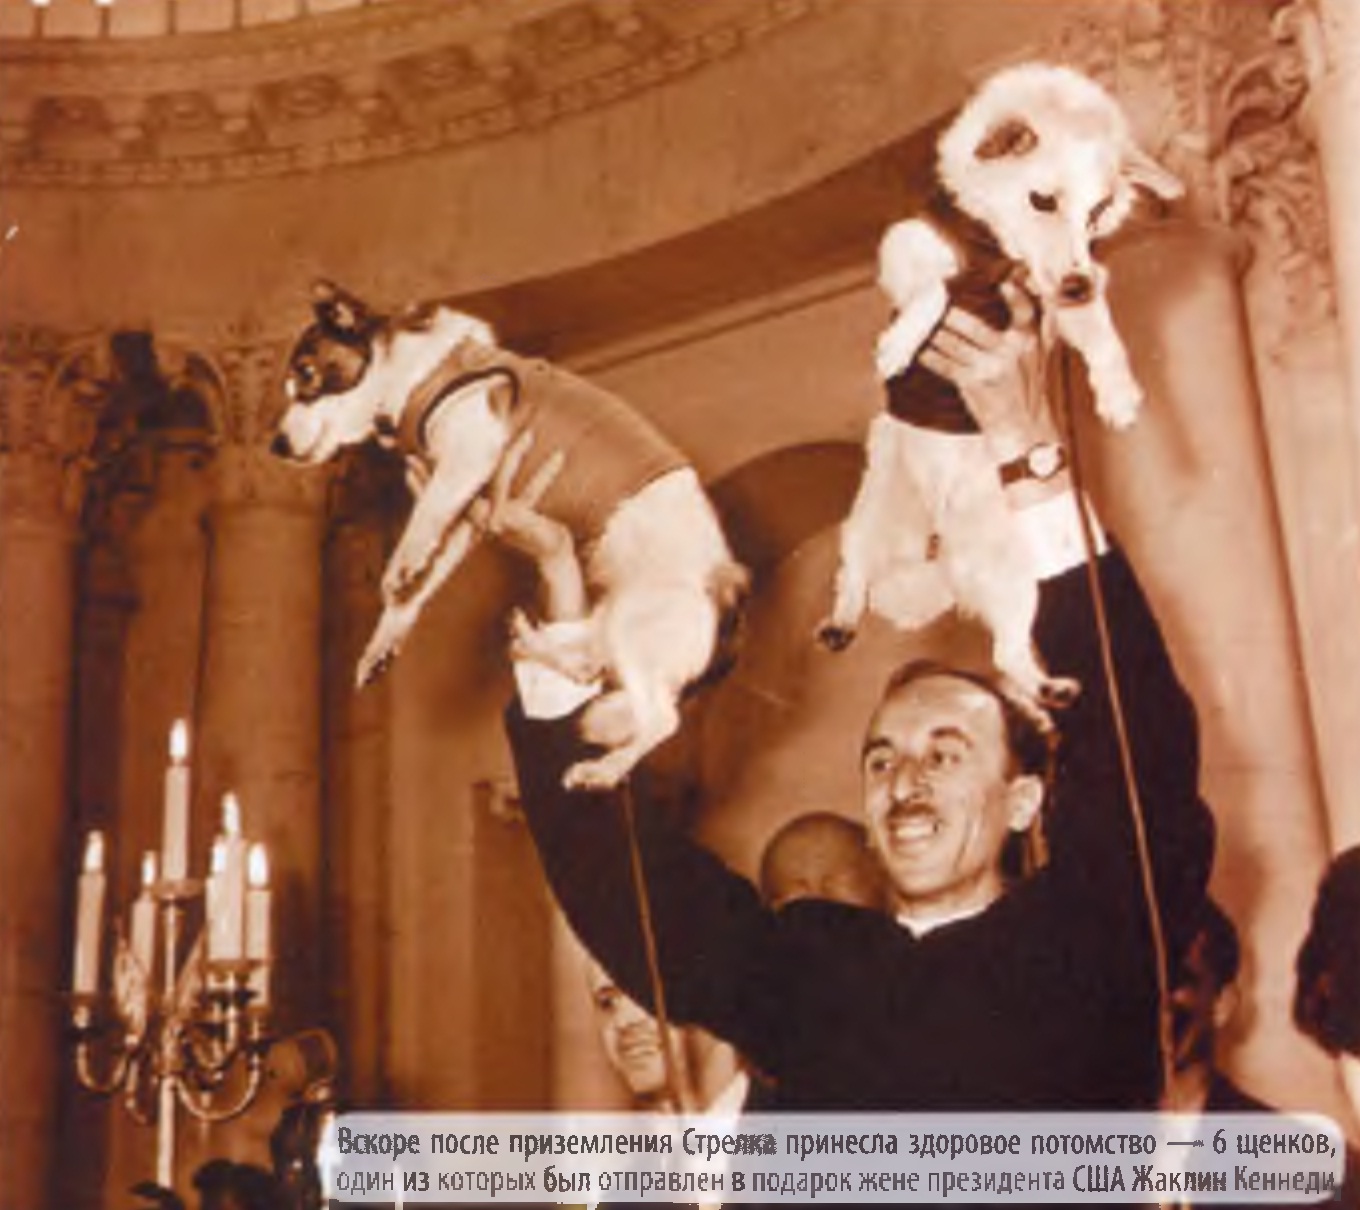 Вскоре после приземления Стрелка принесла здоровое потомство — 6 щенков, один из которых был отправлен в подарок жене президента США Жаклин Кеннеди.